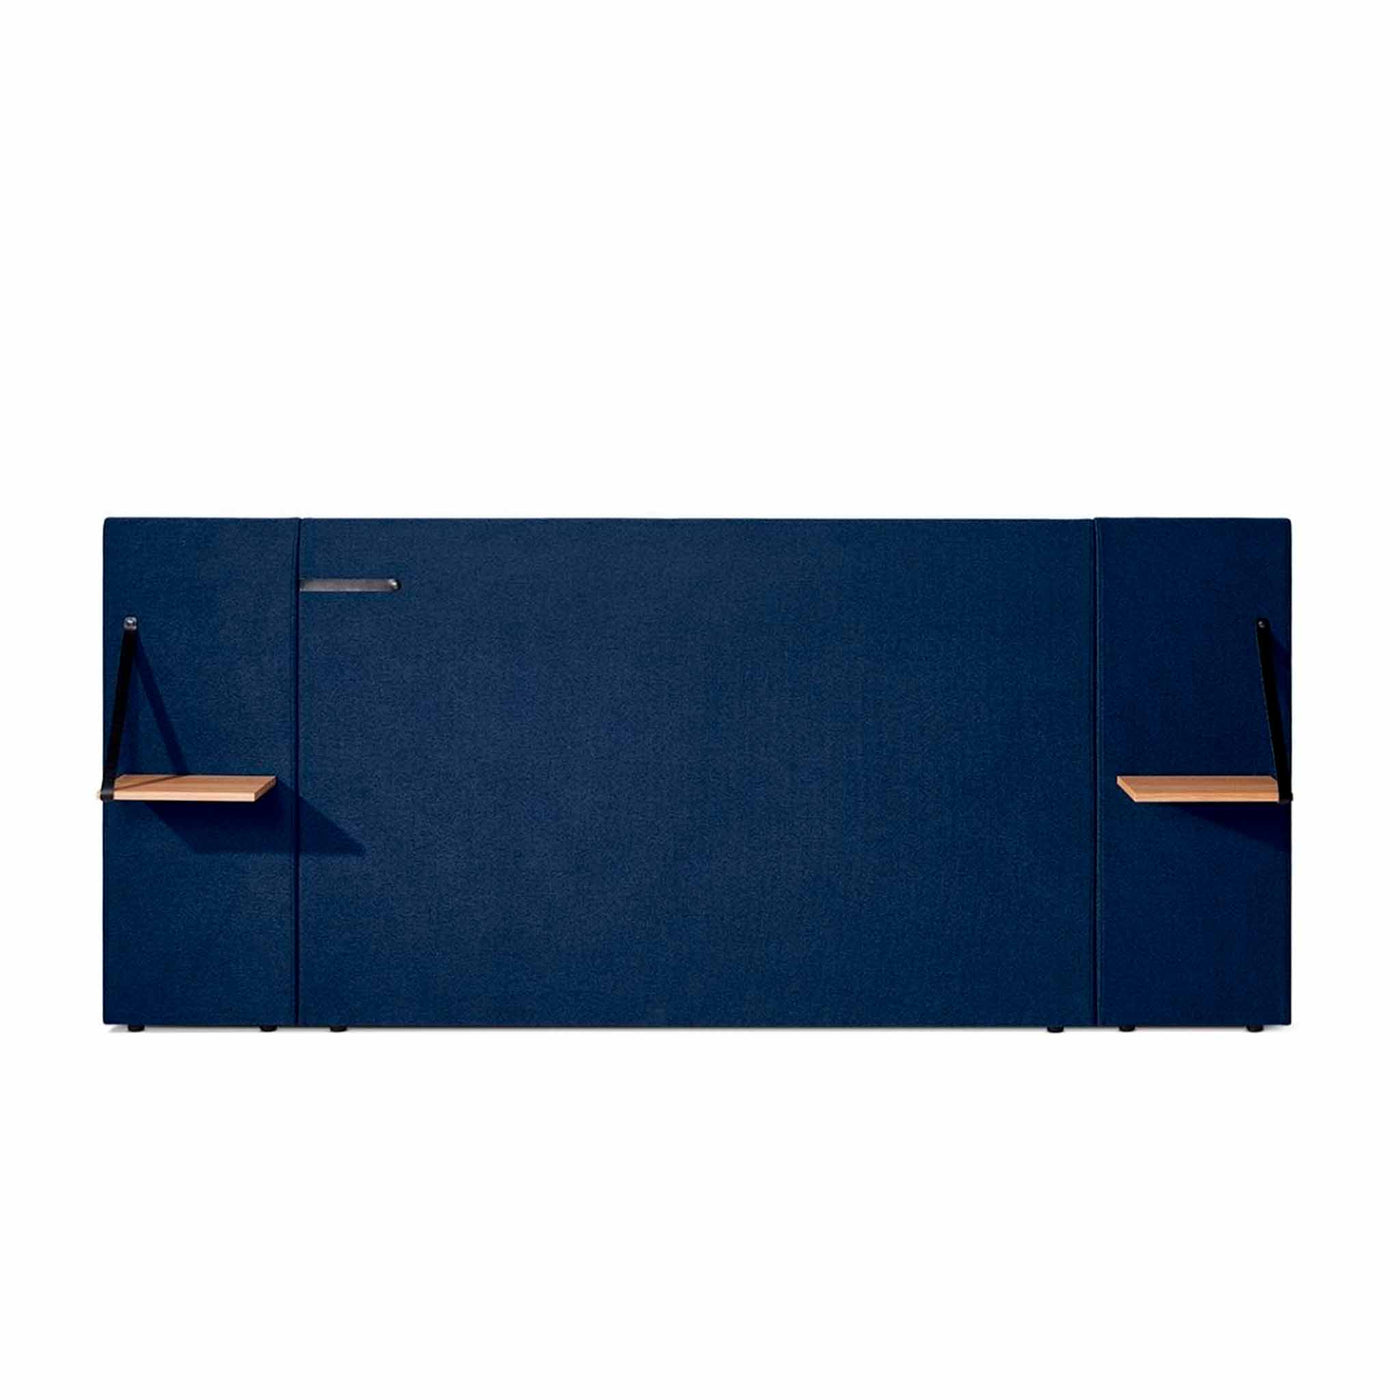 Wing sengegavl inkl. sengeborde fra Opus til 160 cm seng betrukket med stof i flot blå farve.